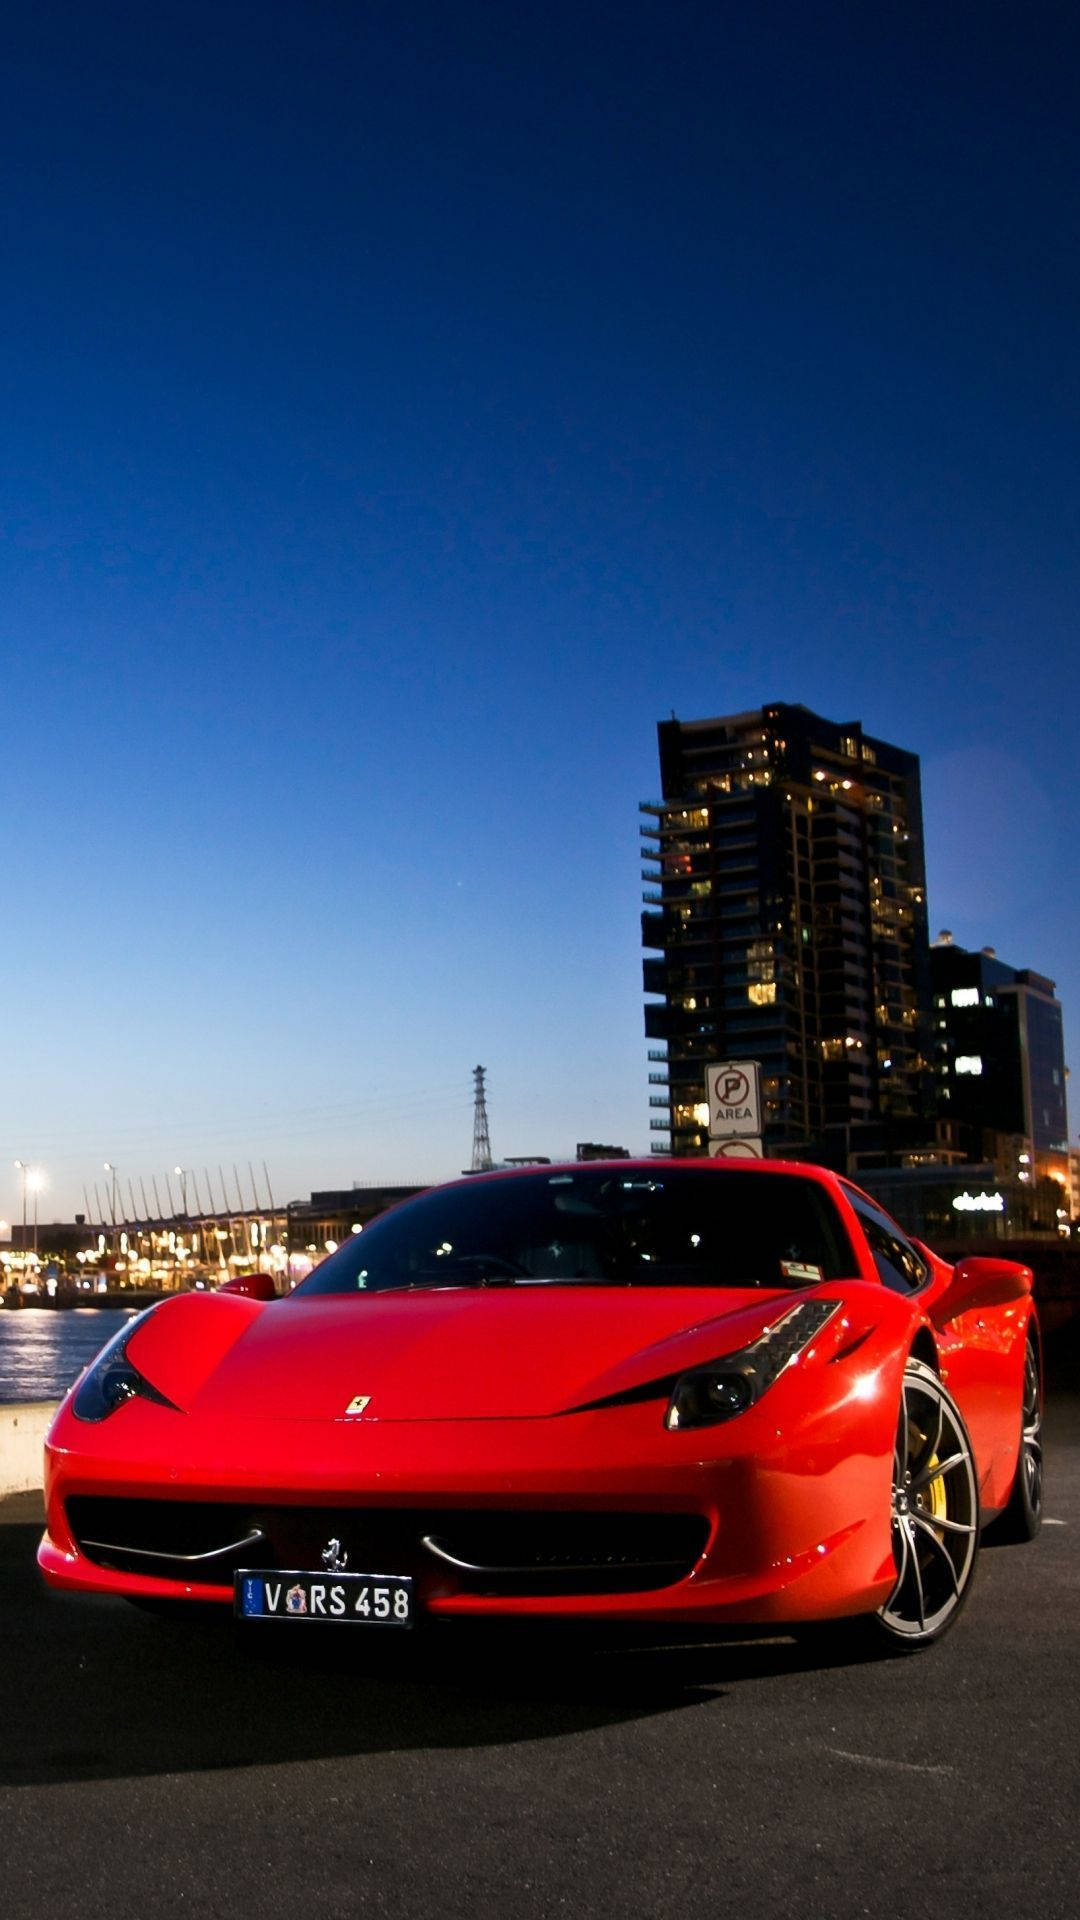 Rotes458 Ferrari Handy Während Der Abenddämmerung. Wallpaper